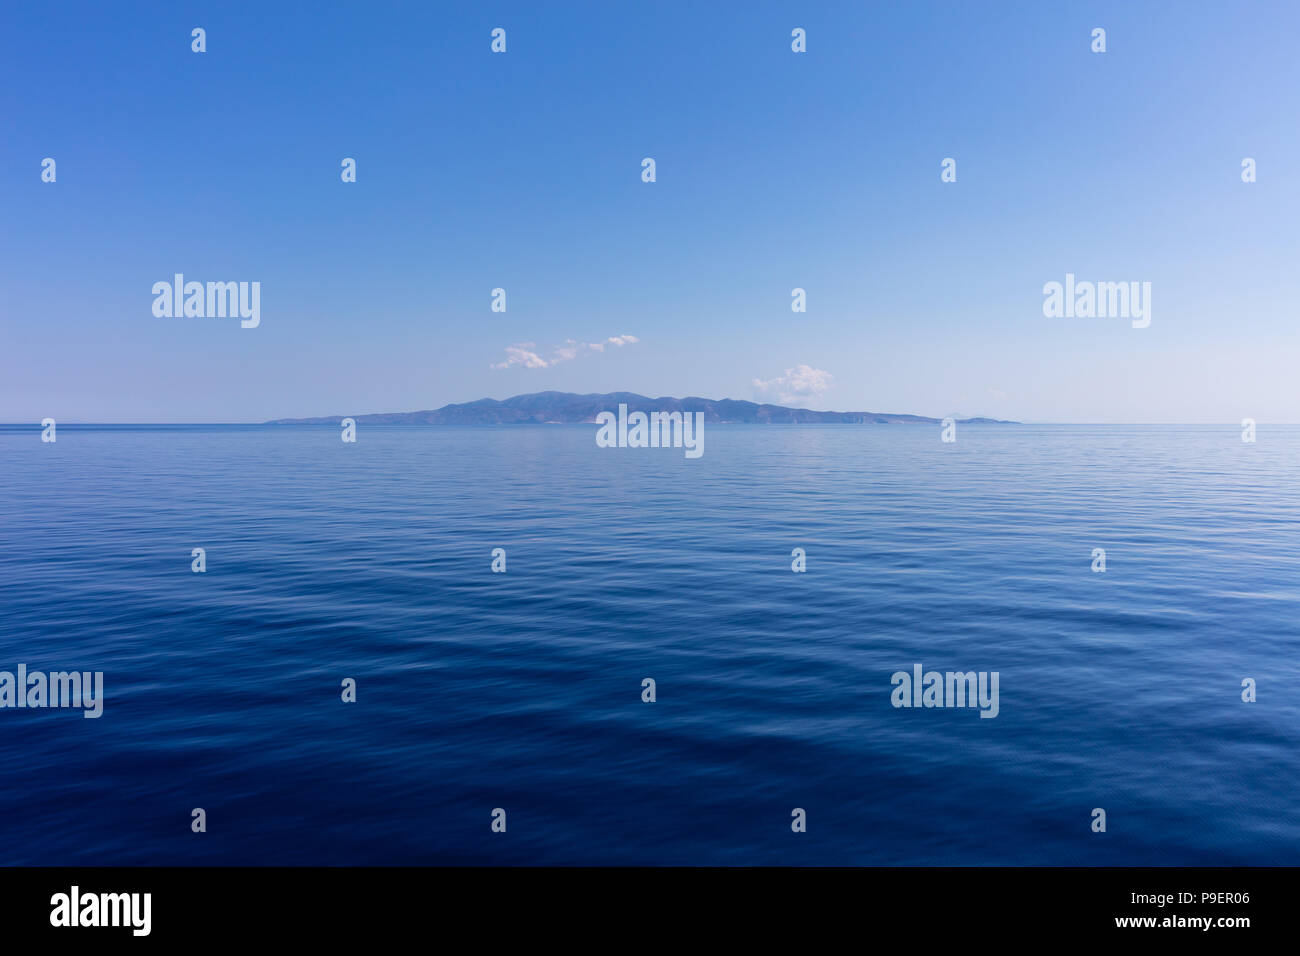 Griechenland. Ägäis, Kykladen. Kleine Insel der Kykladen auf blauen Himmel und ruhige See Wasser Hintergrund Stockfoto